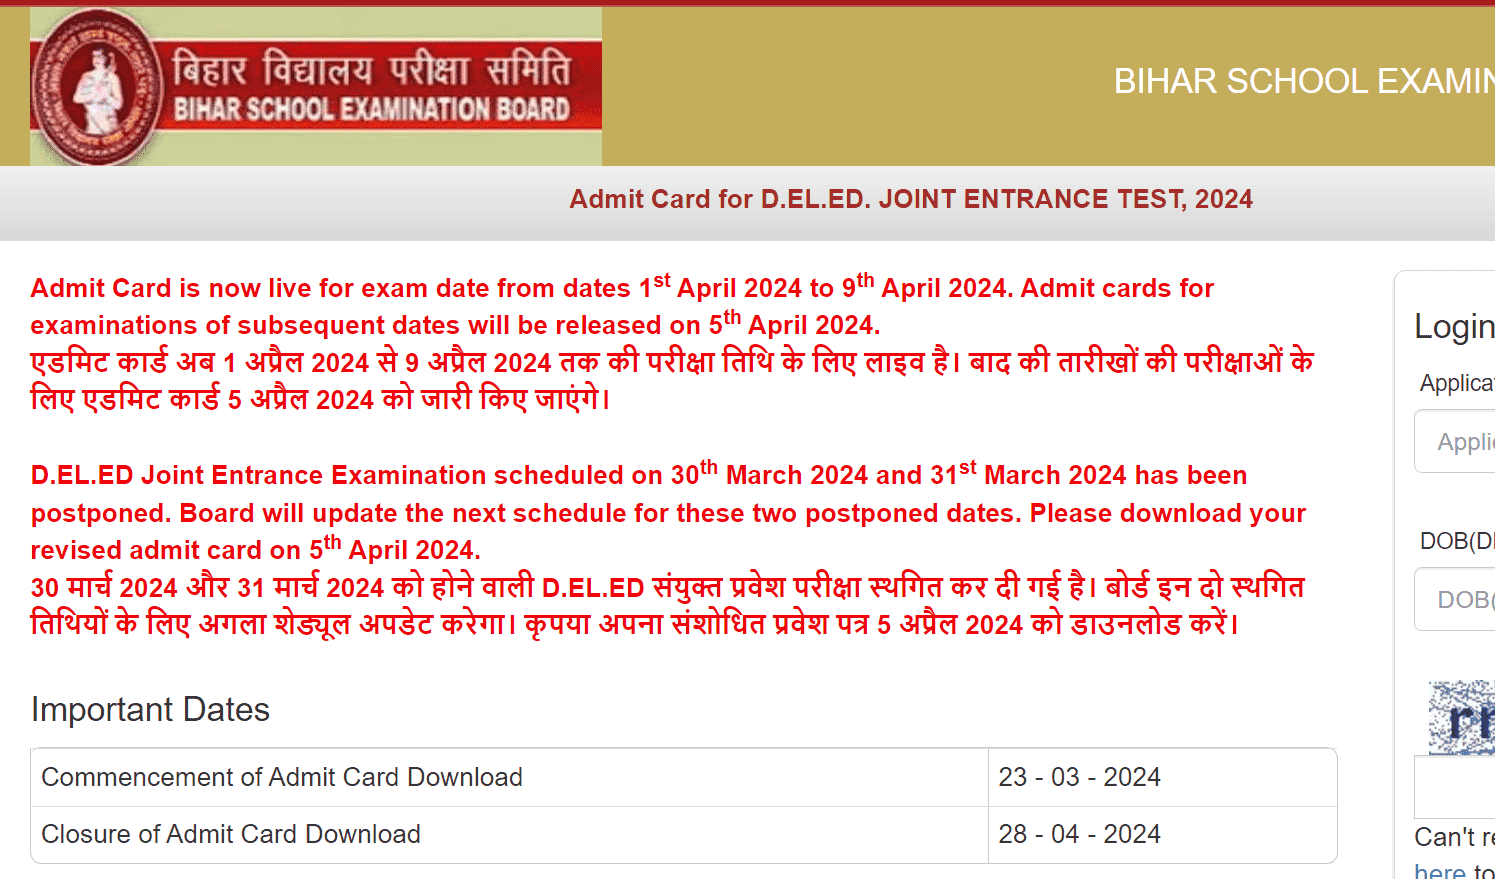 BSEB Bihar DElEd Admit Card 2024 Download Link